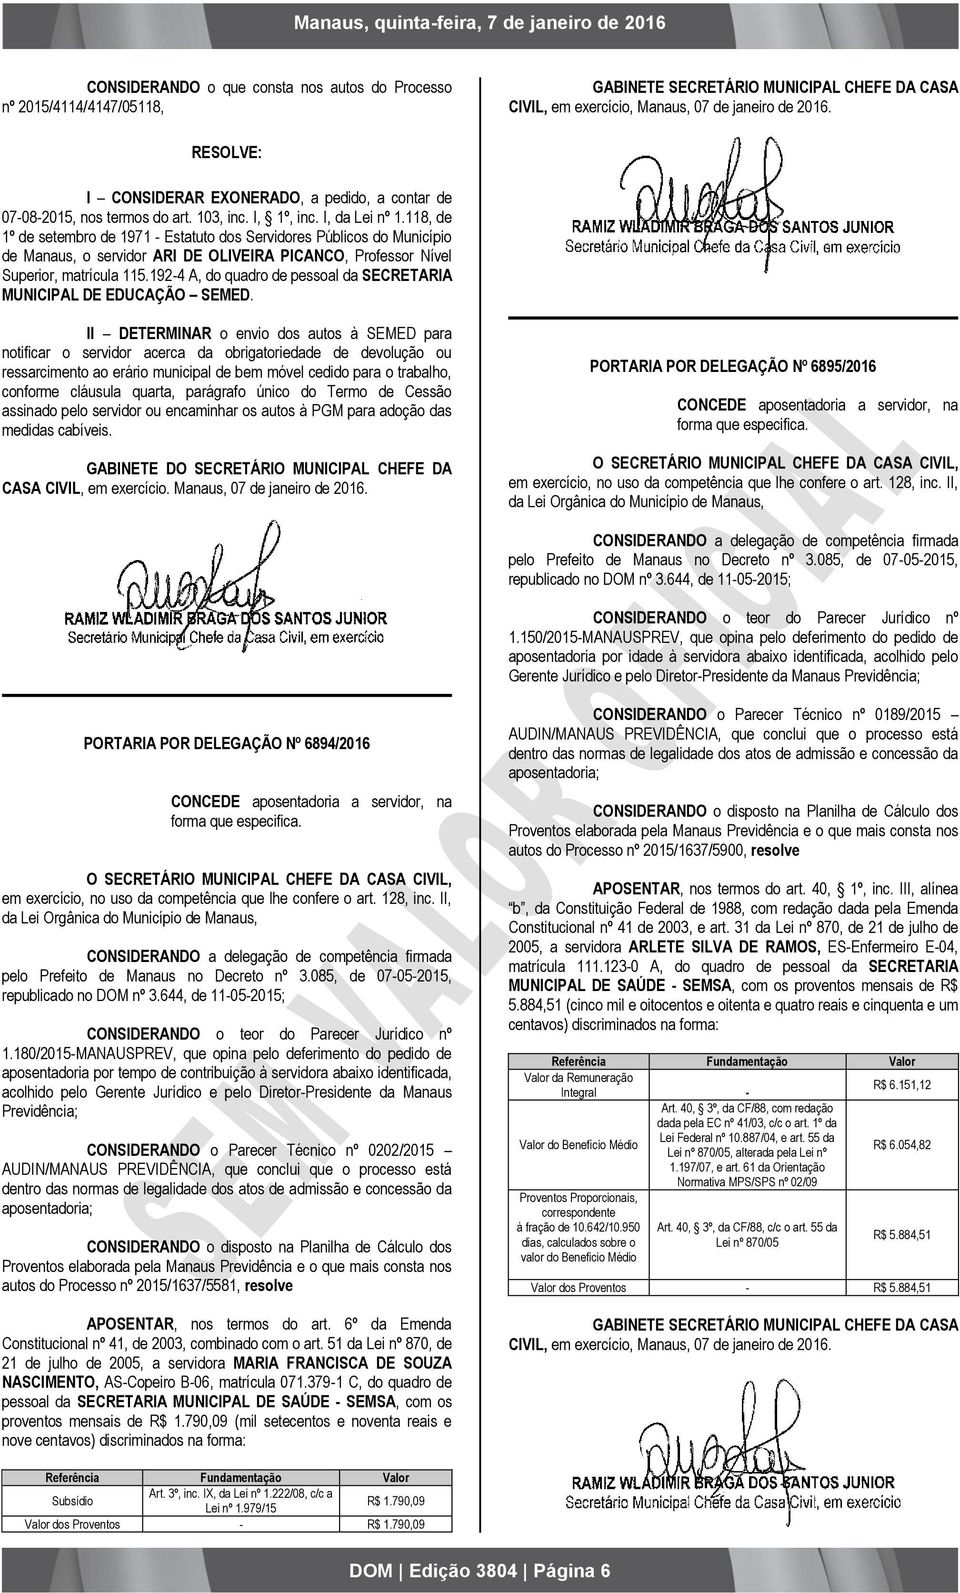 118, de 1º de setembro de 1971 - Estatuto dos Servidores Públicos do Município de Manaus, o servidor ARI DE OLIVEIRA PICANCO, Professor Nível Superior, matrícula 115.